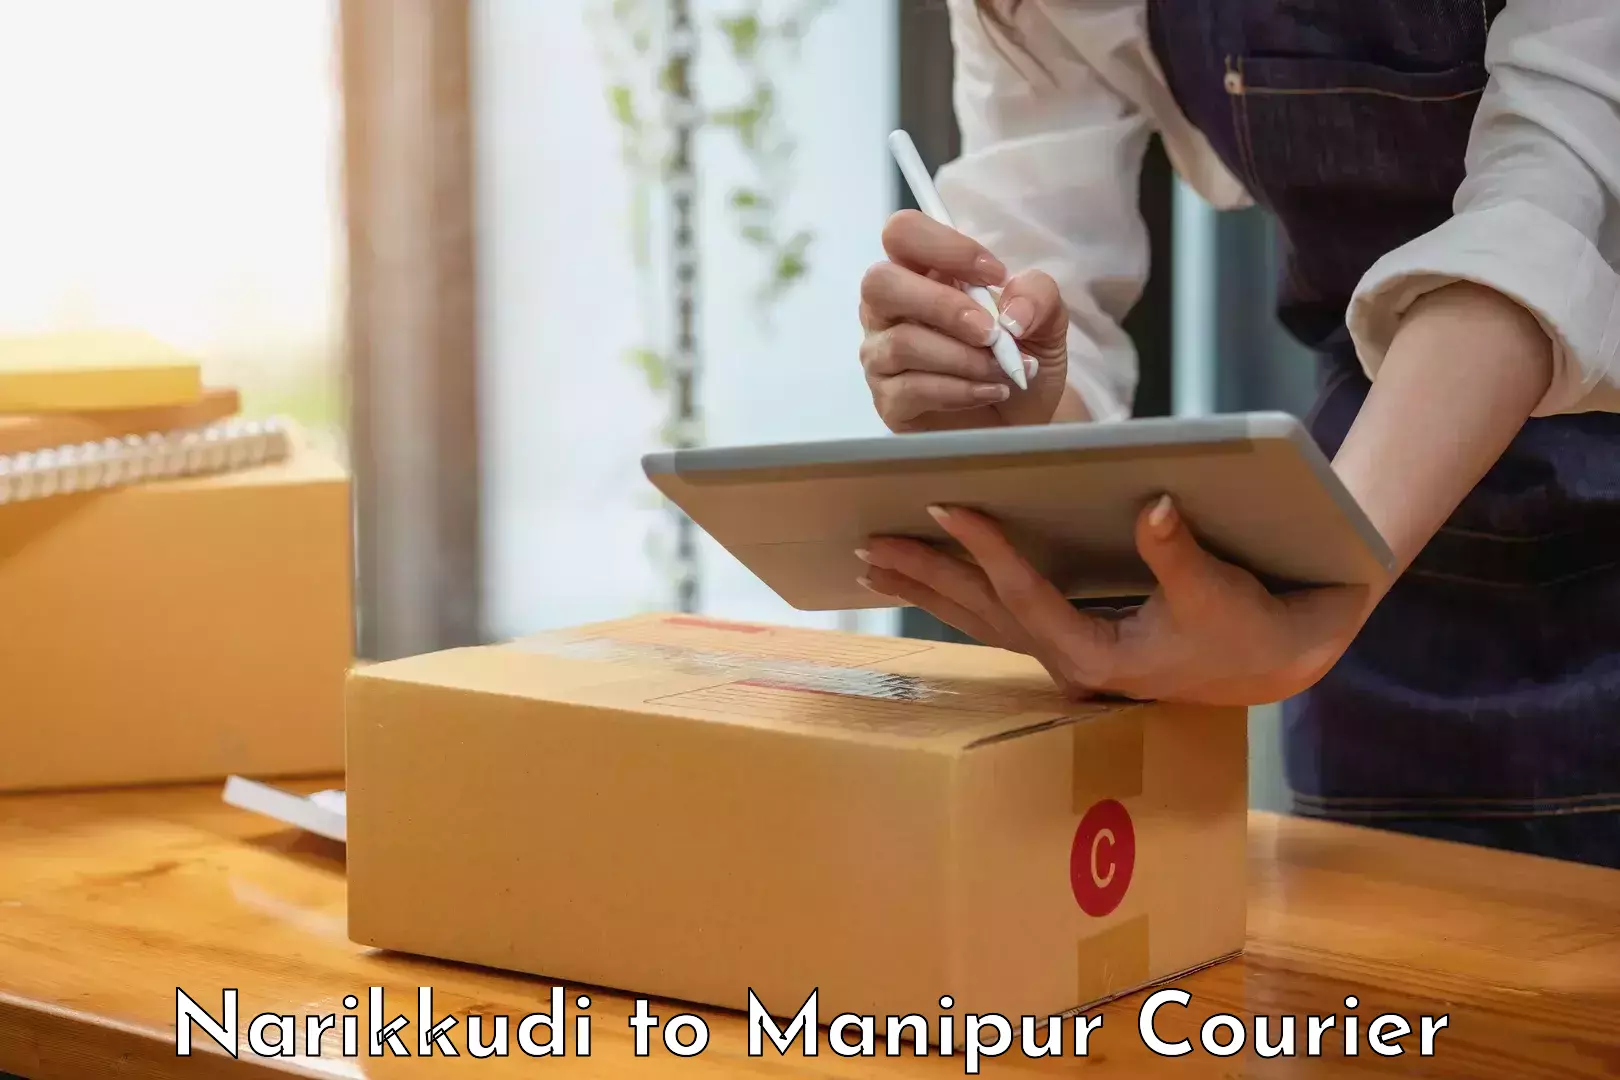 Reliable courier service Narikkudi to Moirang